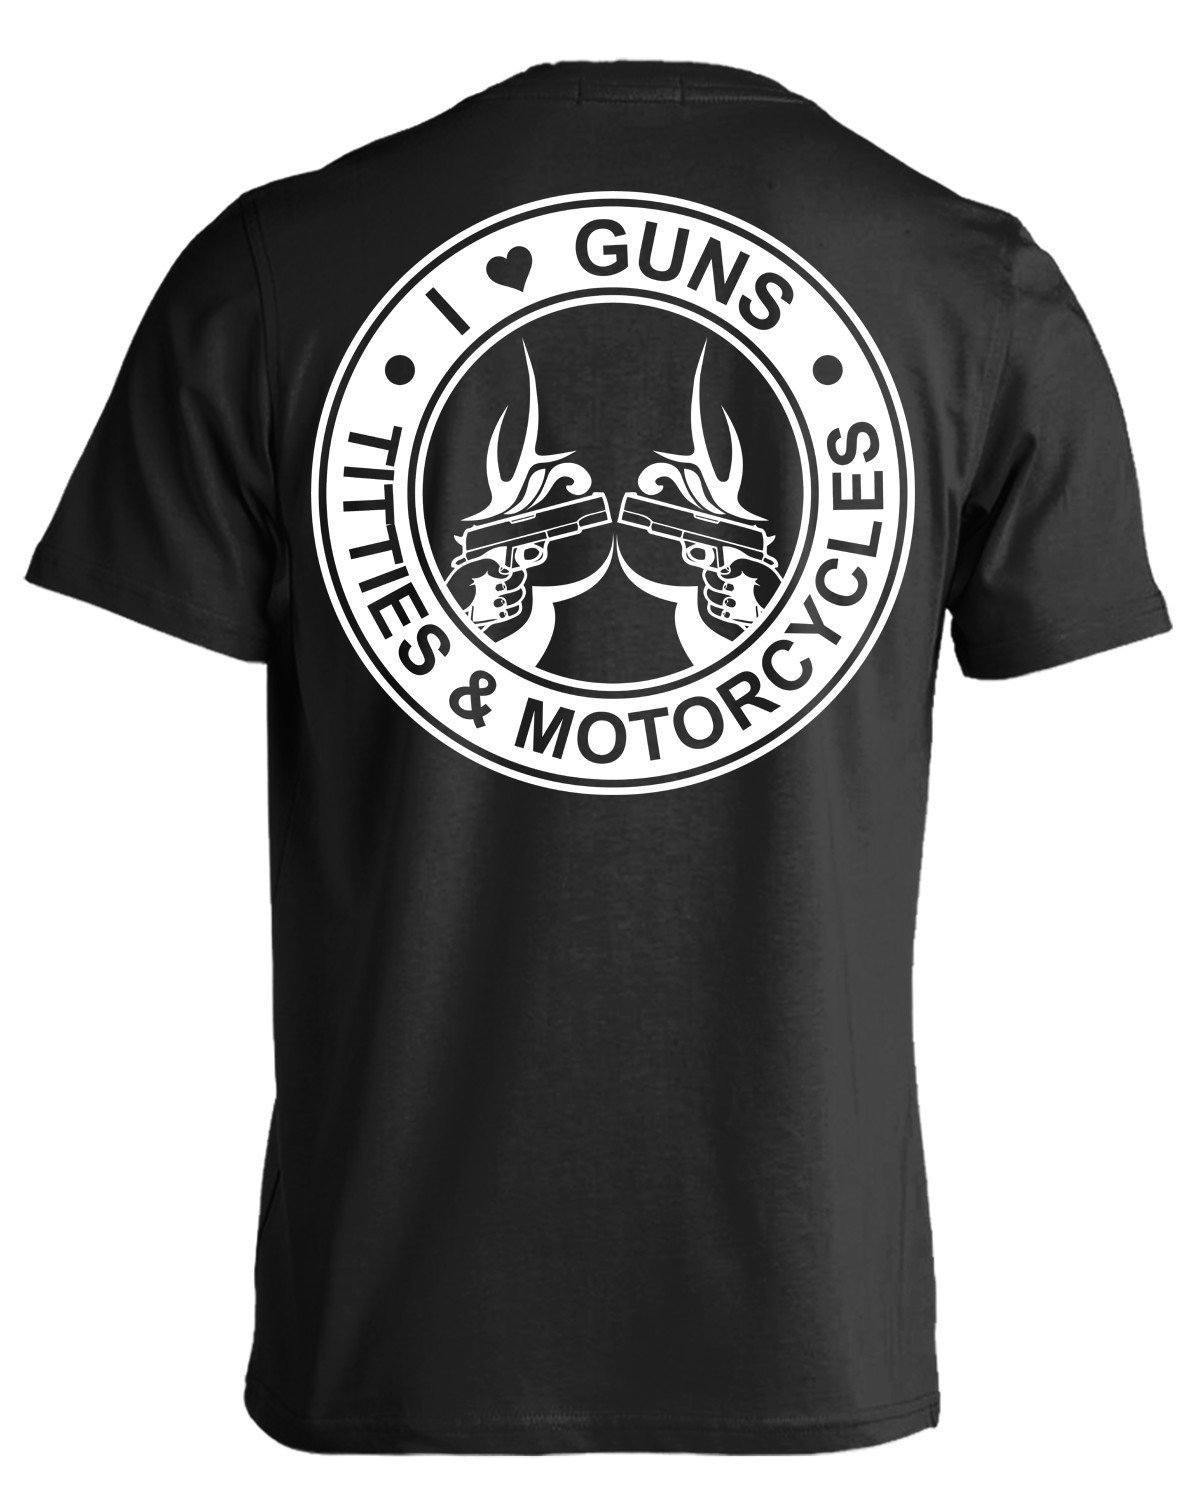 Guns Titties & Motorcycle T-Shirt - The Bikers' Den